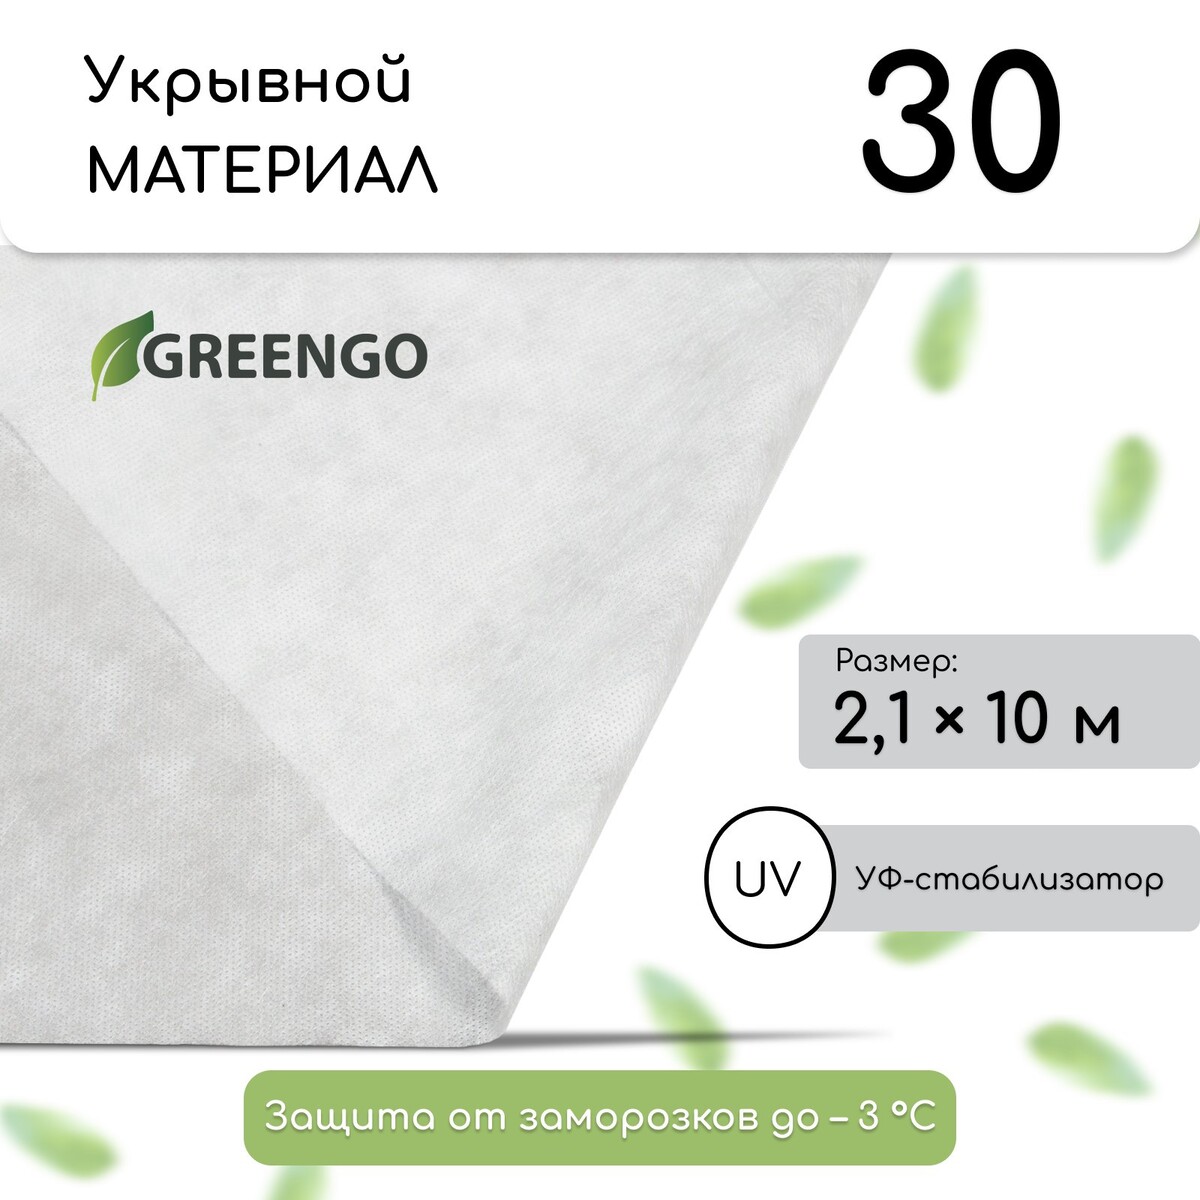 Материал укрывной, 10 × 2,1 м, плотность 30 г/м², белый, спанбонд с уф-стабилизатором, greengo, эконом 30%